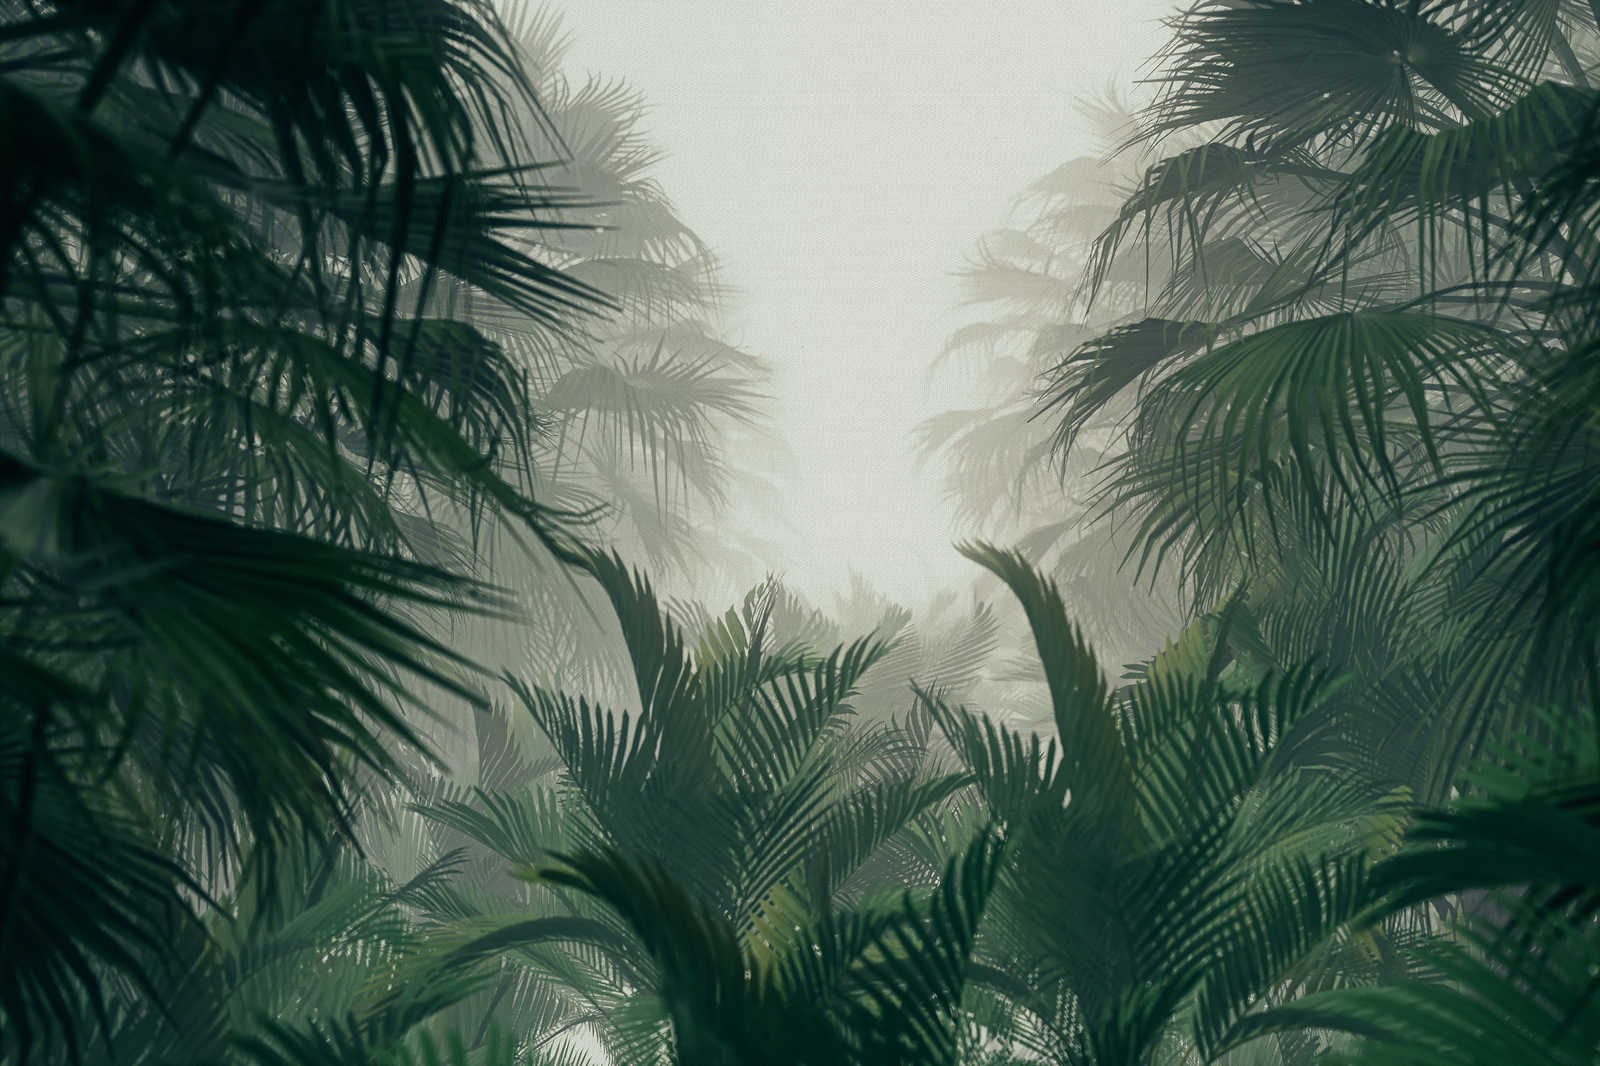             Leinwandbild mit Dschungelblick in der Regenzeit – 0,90 m x 0,60 m
        